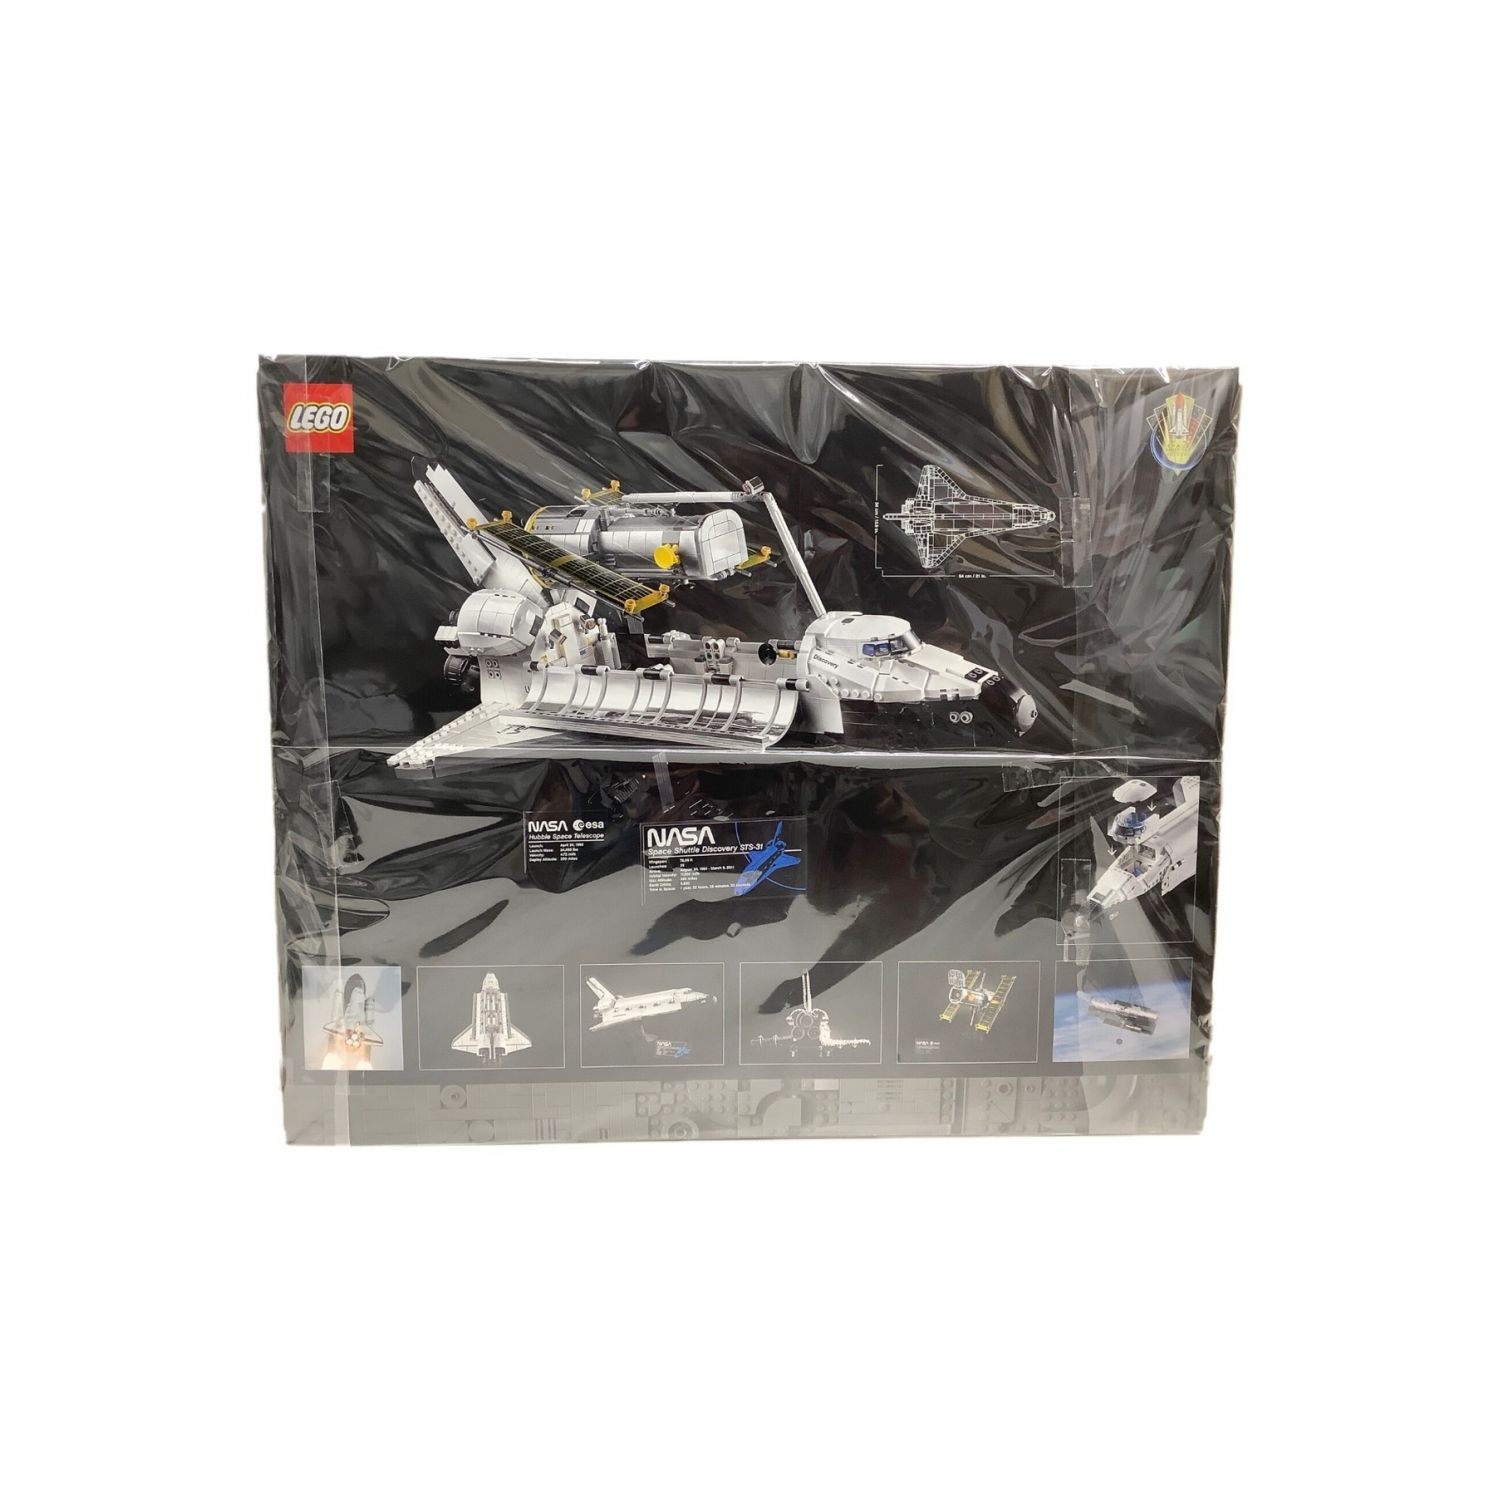 レゴ(LEGO) NASA スペースシャトル ディスカバリー号 10283-